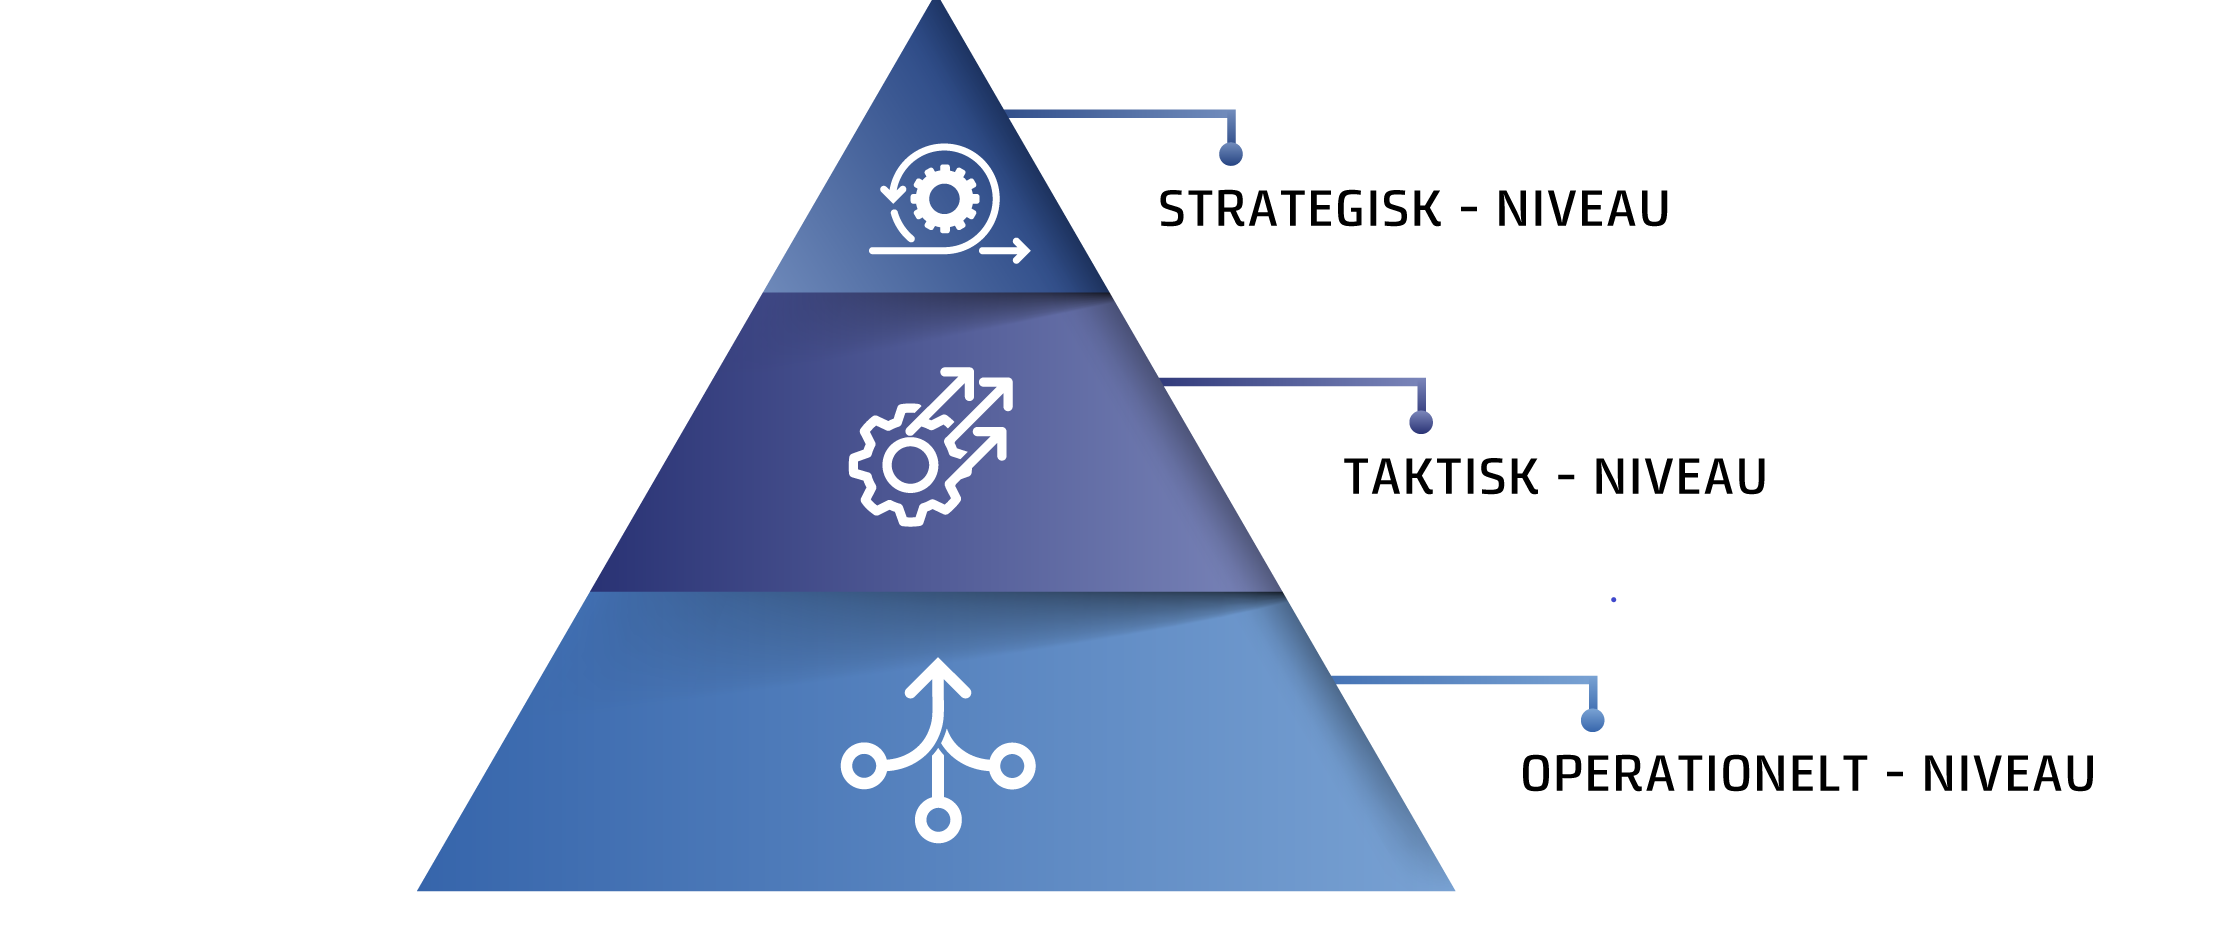 Billede af en trekantsfigur, der beskriver de forskellige niveauer, nemlig strategisk, taktisk og operationelt niveau.